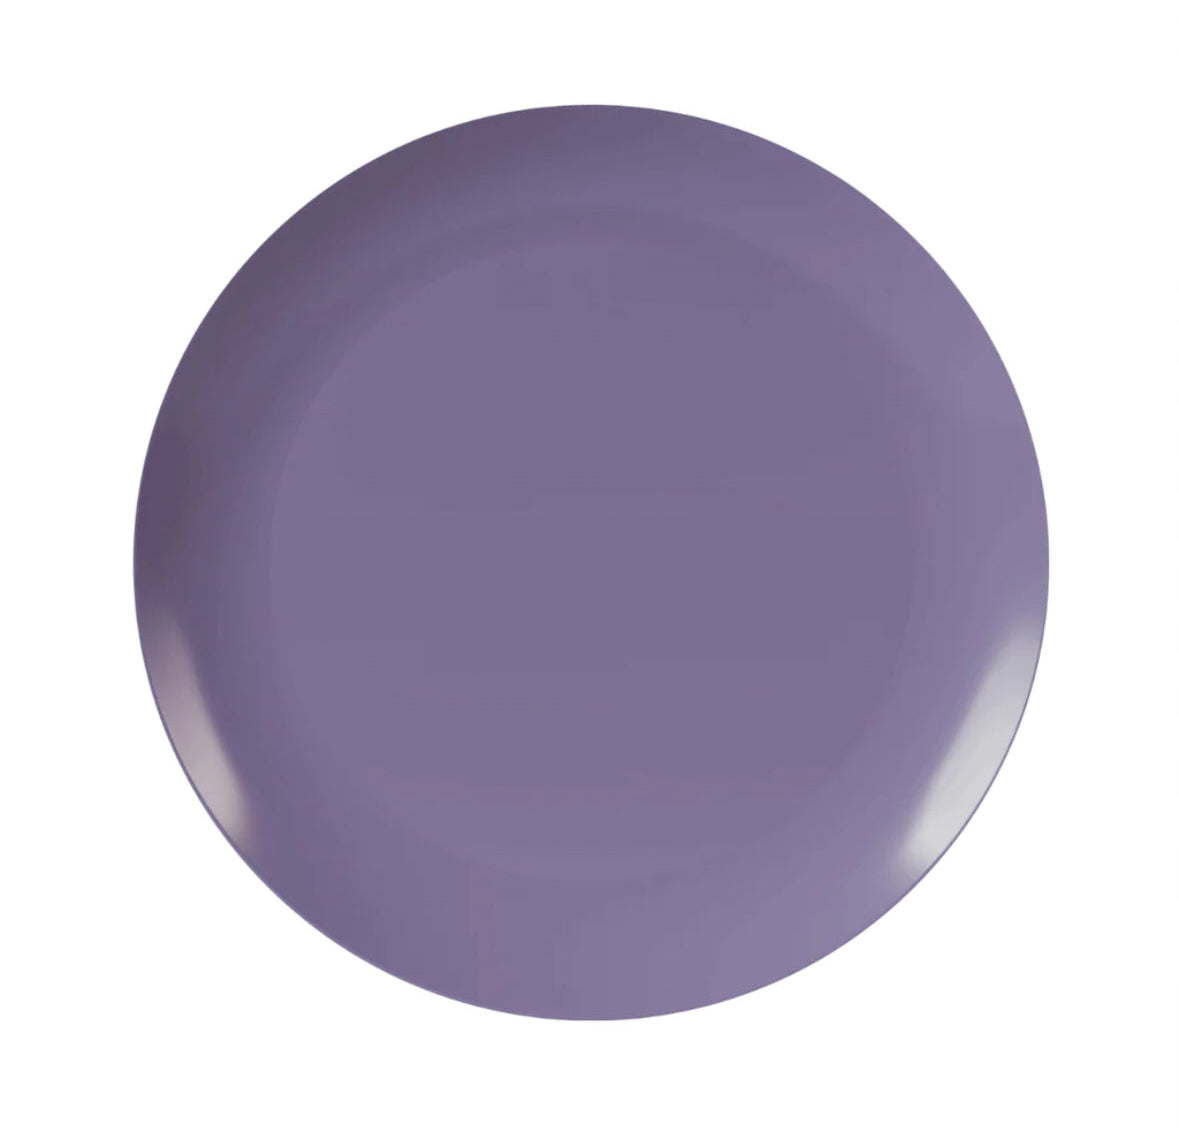 Purple Rose Design Plastic Plates (10 Count)